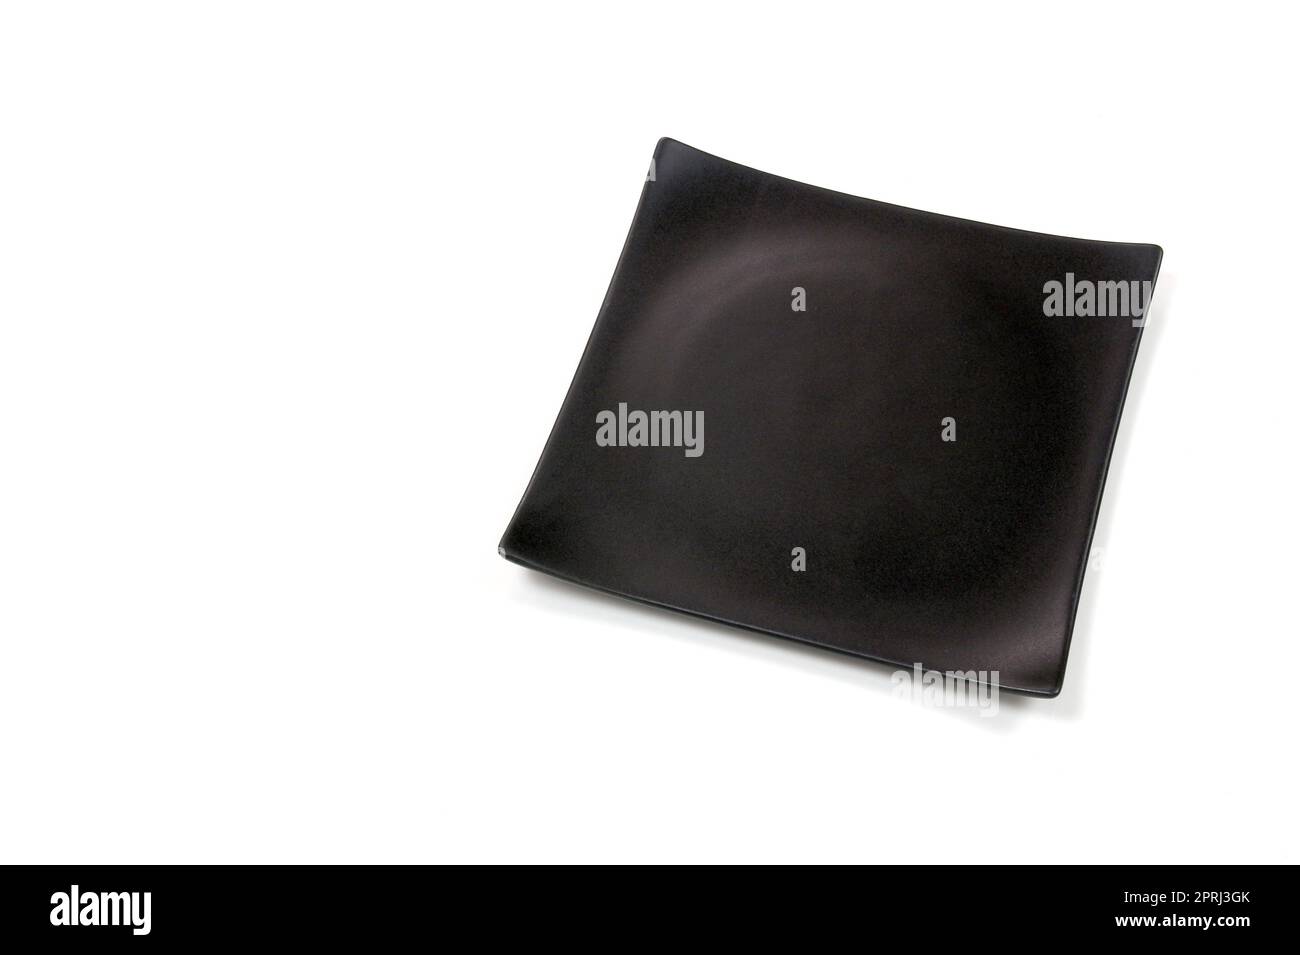 Piastra in ceramica quadrata nera vuota con texture ruvida, isolata su sfondo bianco con tracciato di ritaglio, vista dall'alto Foto Stock